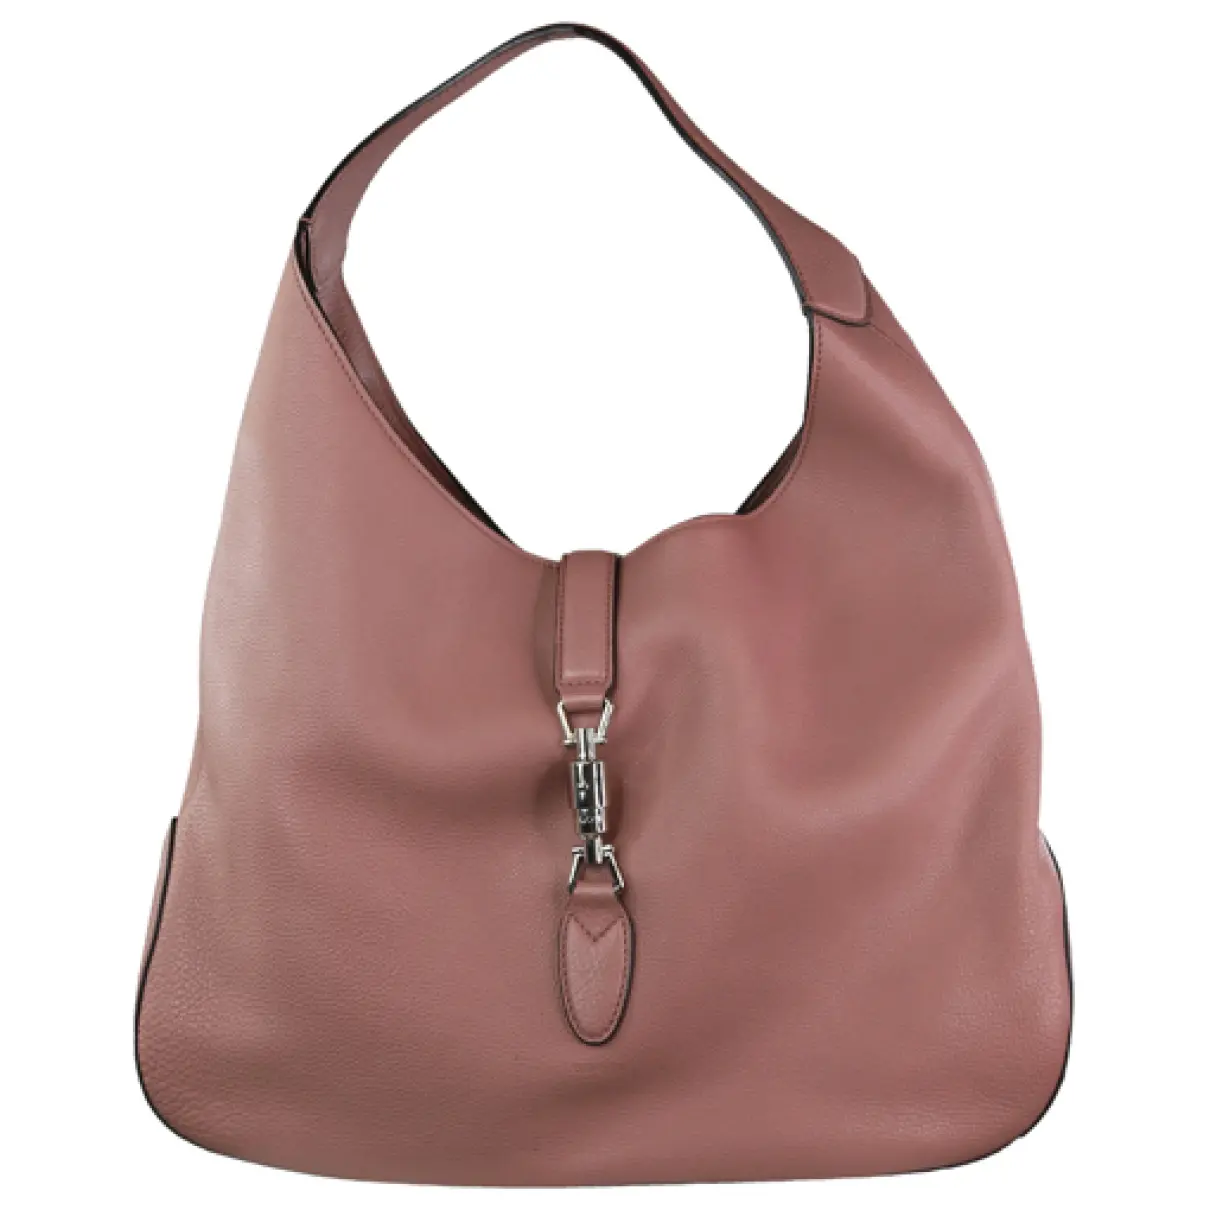 Jackie leather handbag